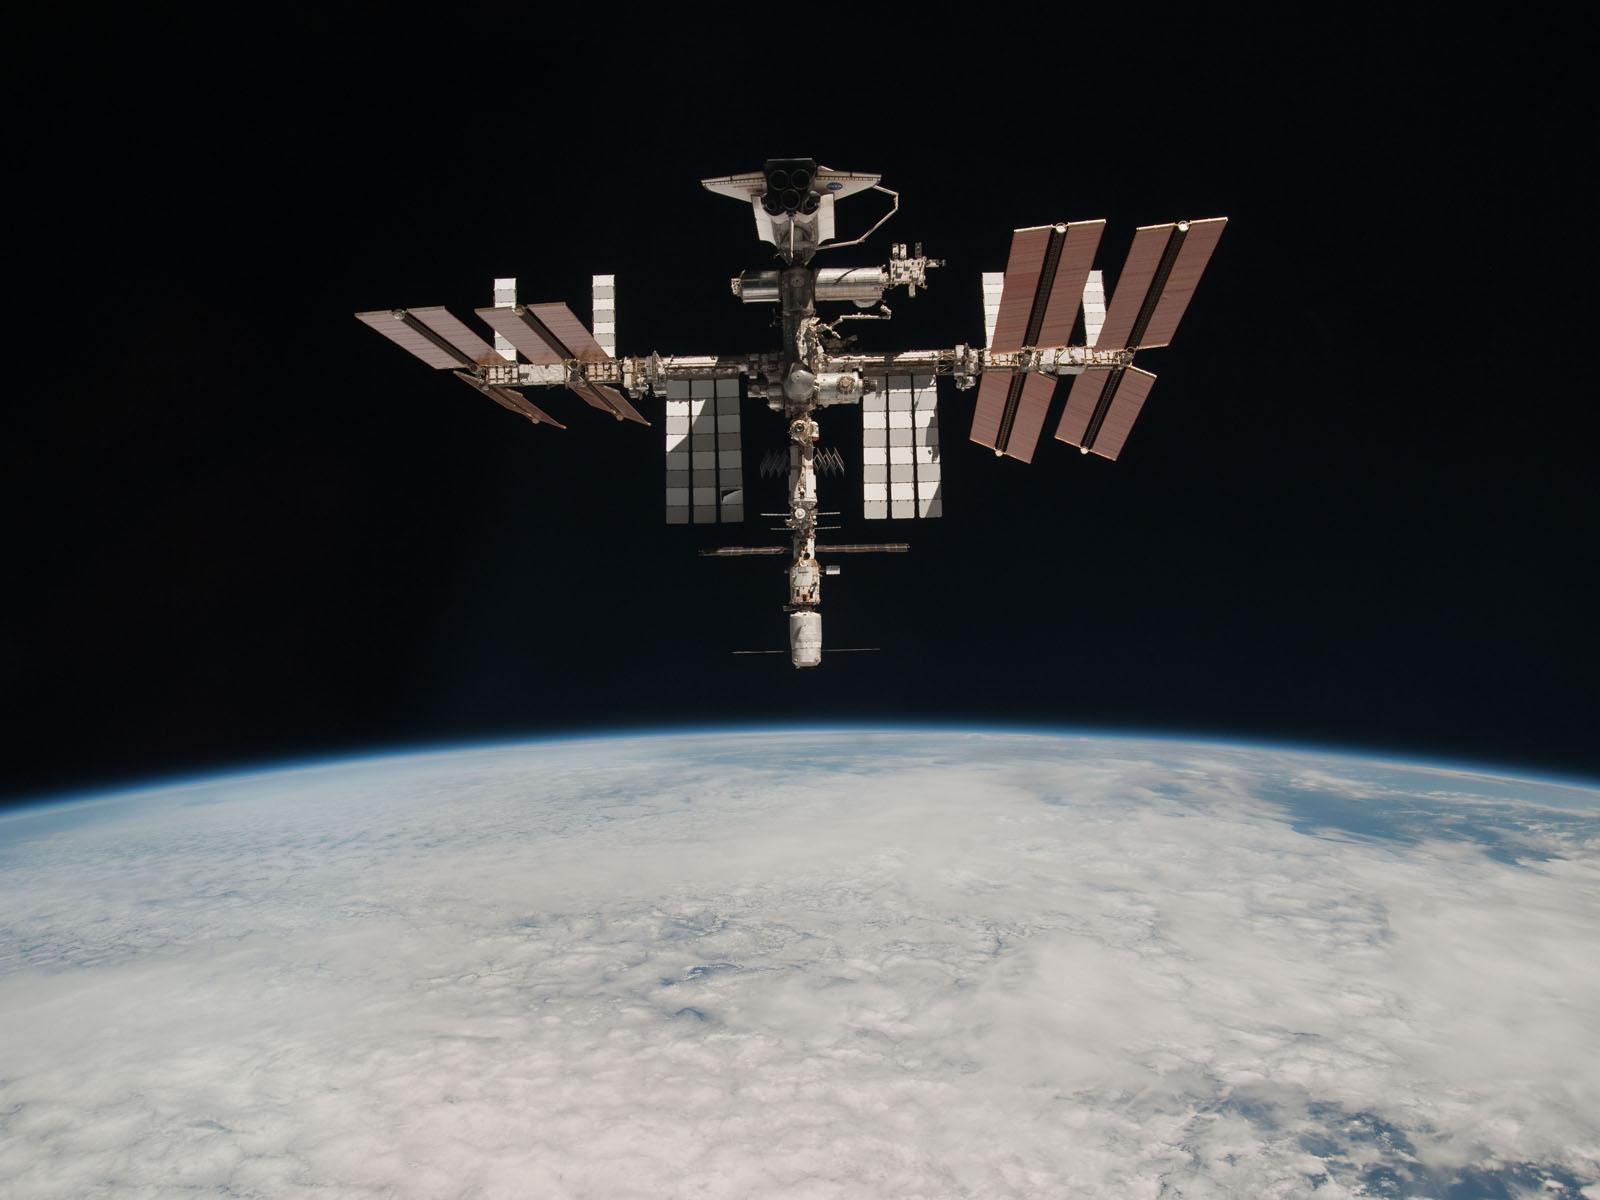 Zwycięskie eksperymenty zostaną przeprowadzone na pokładzie Międzynarodowej Stacji Kosmicznej   